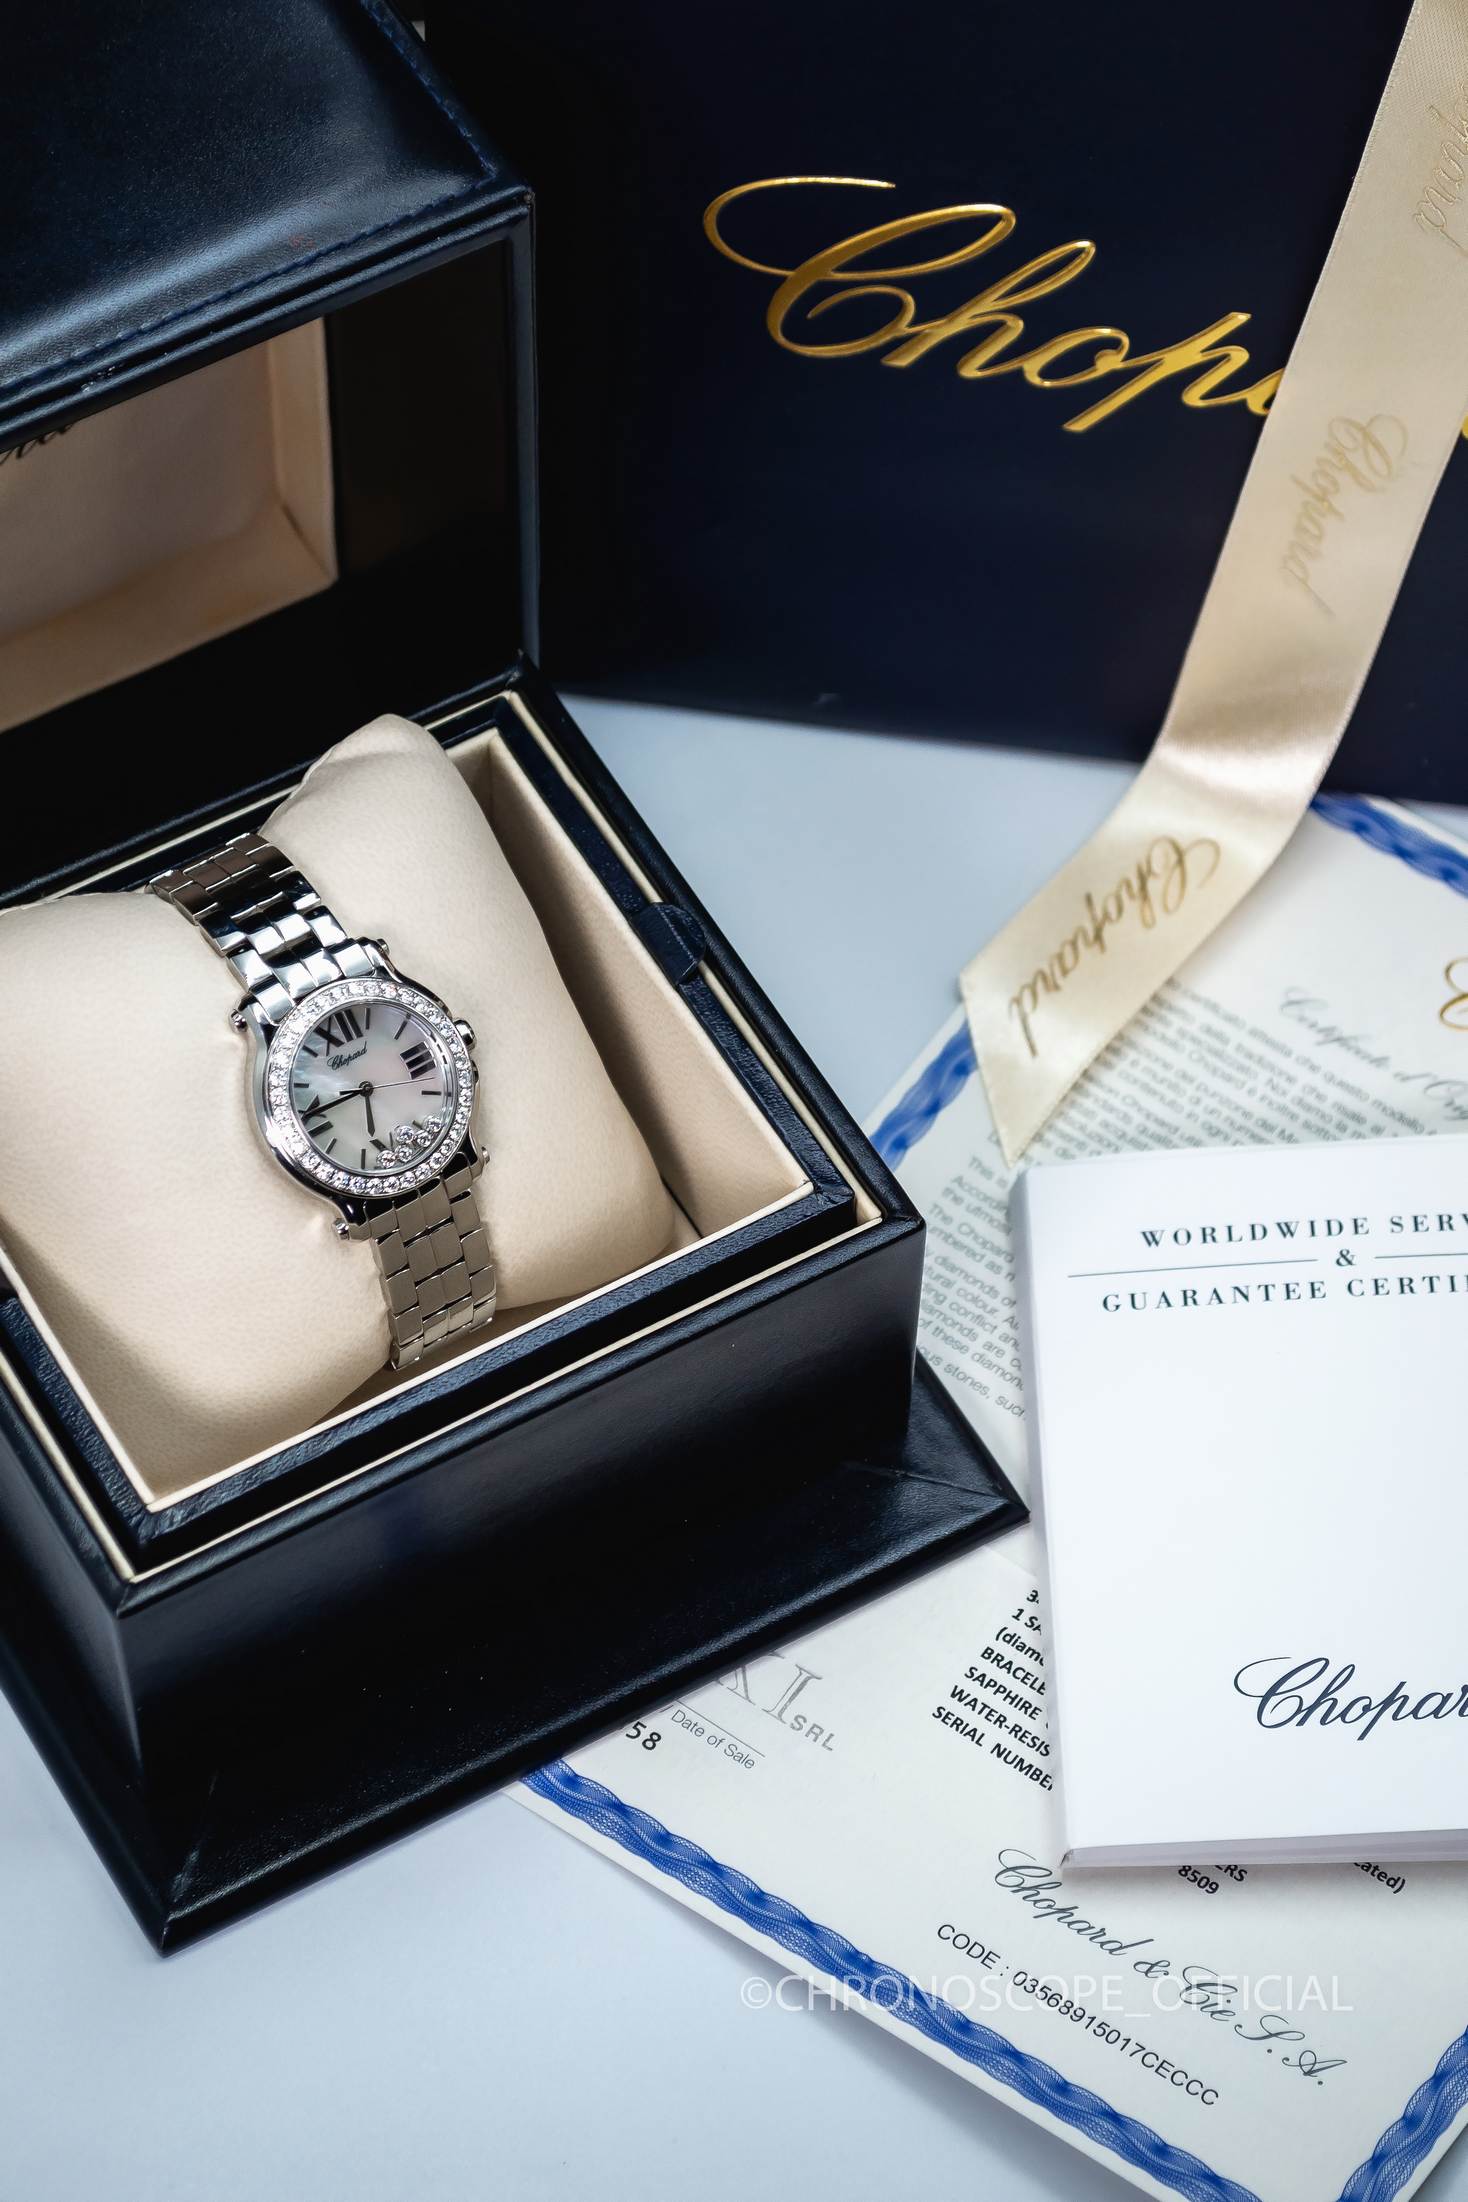 Купить часы Chopard в г. Москва, цены на наручные часы Шопард